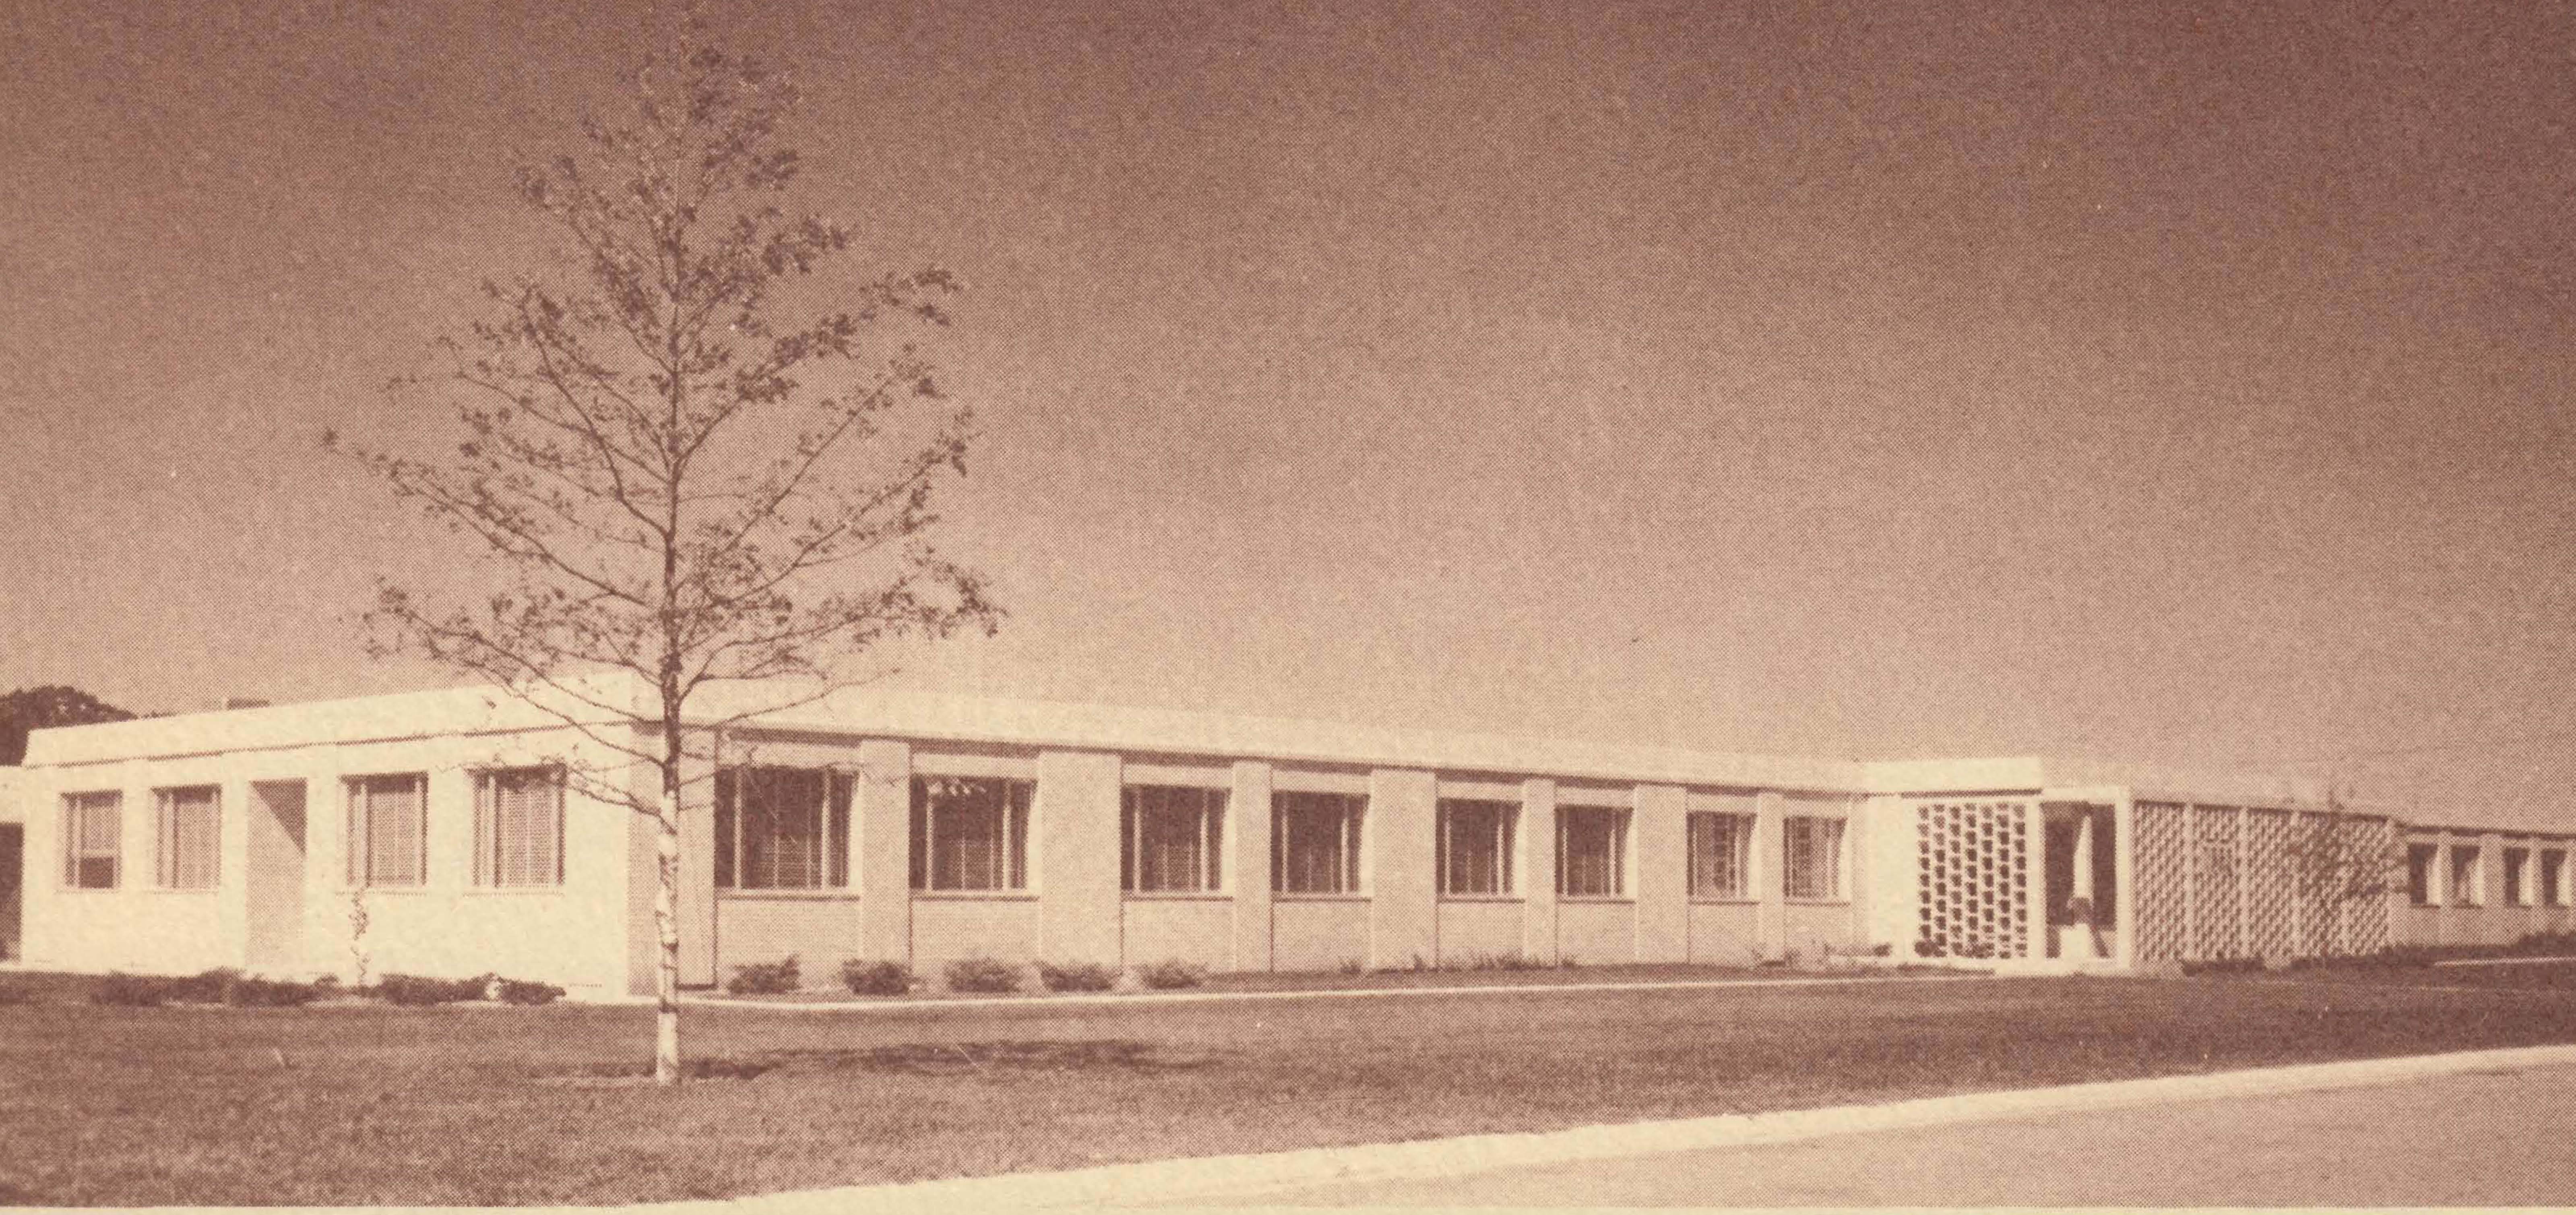 Original CINDAS building